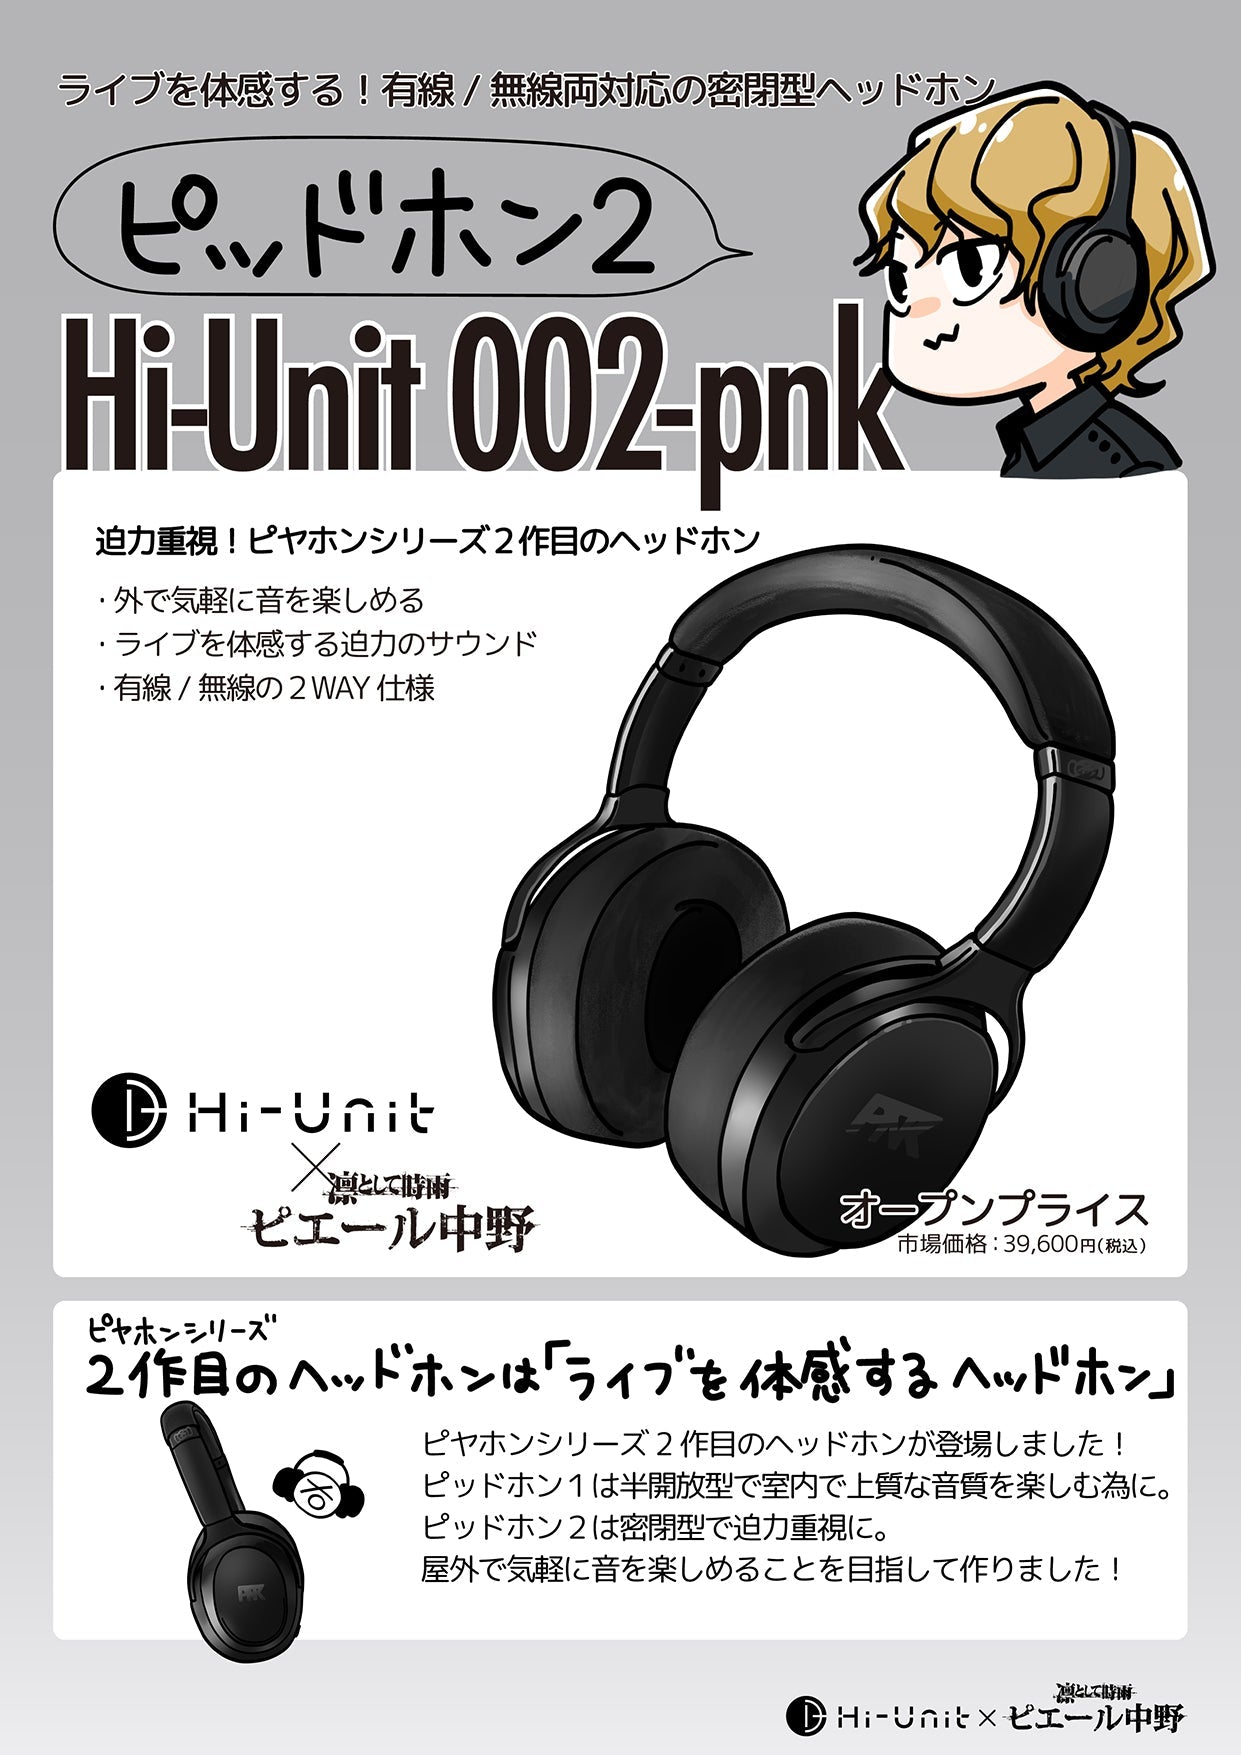 【アウトレット!!】Hi-Unit 002-pnk ピッドホン2